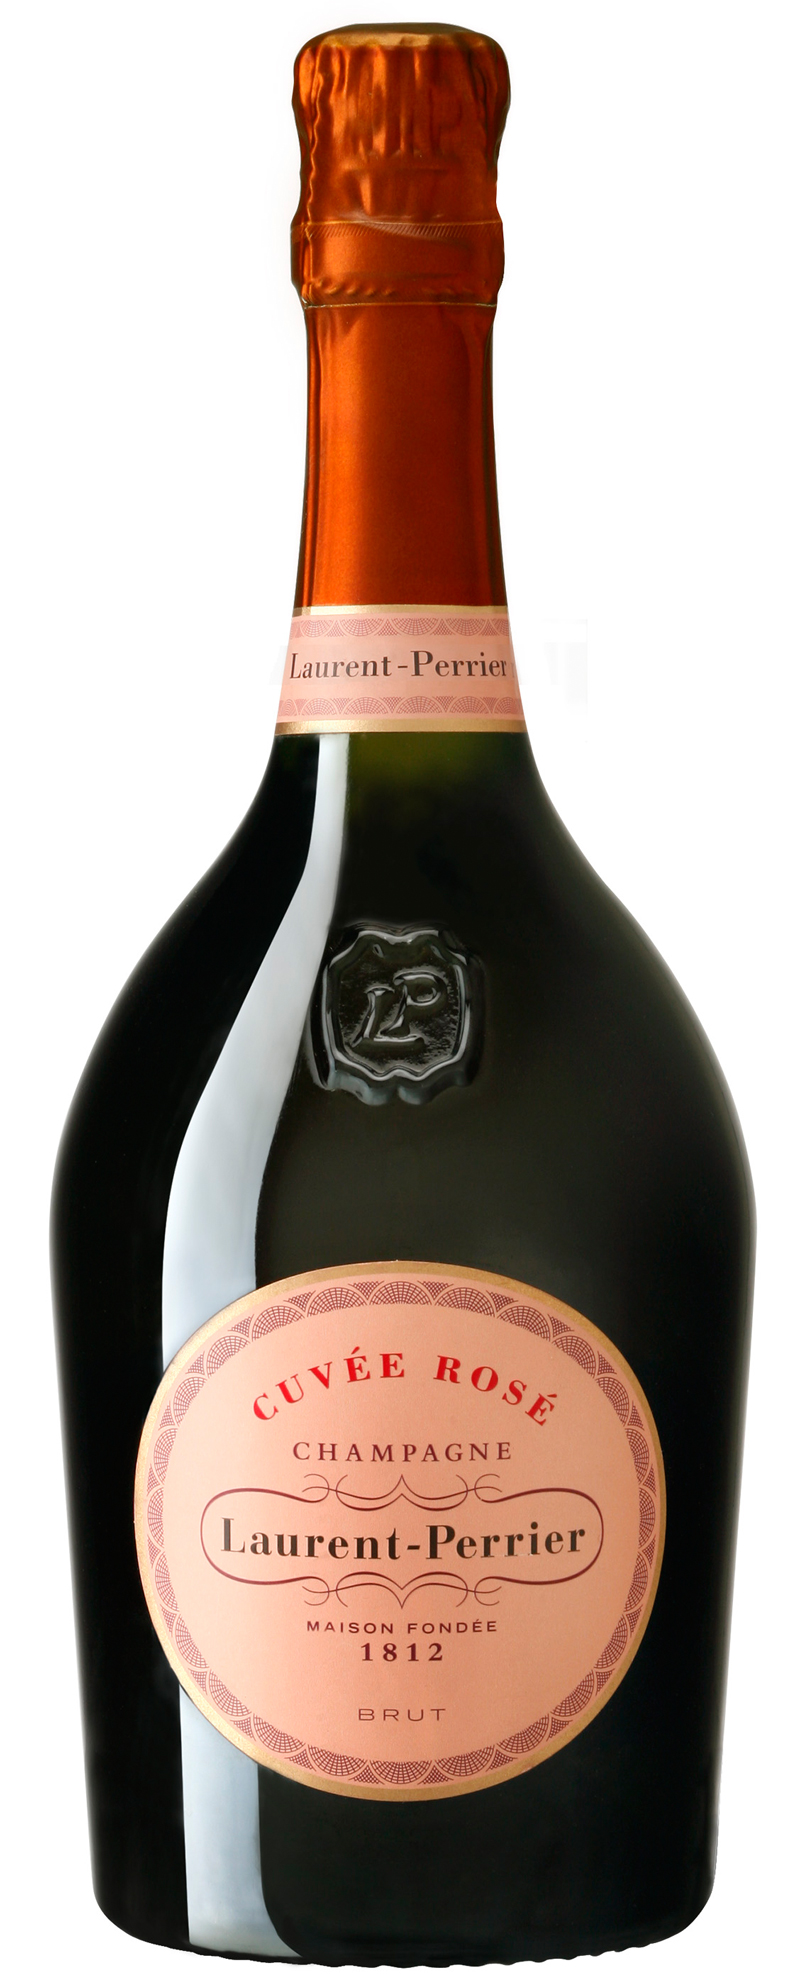 Champagne "Laurent-Perrier" Cuvée ROSÉ brut AOC